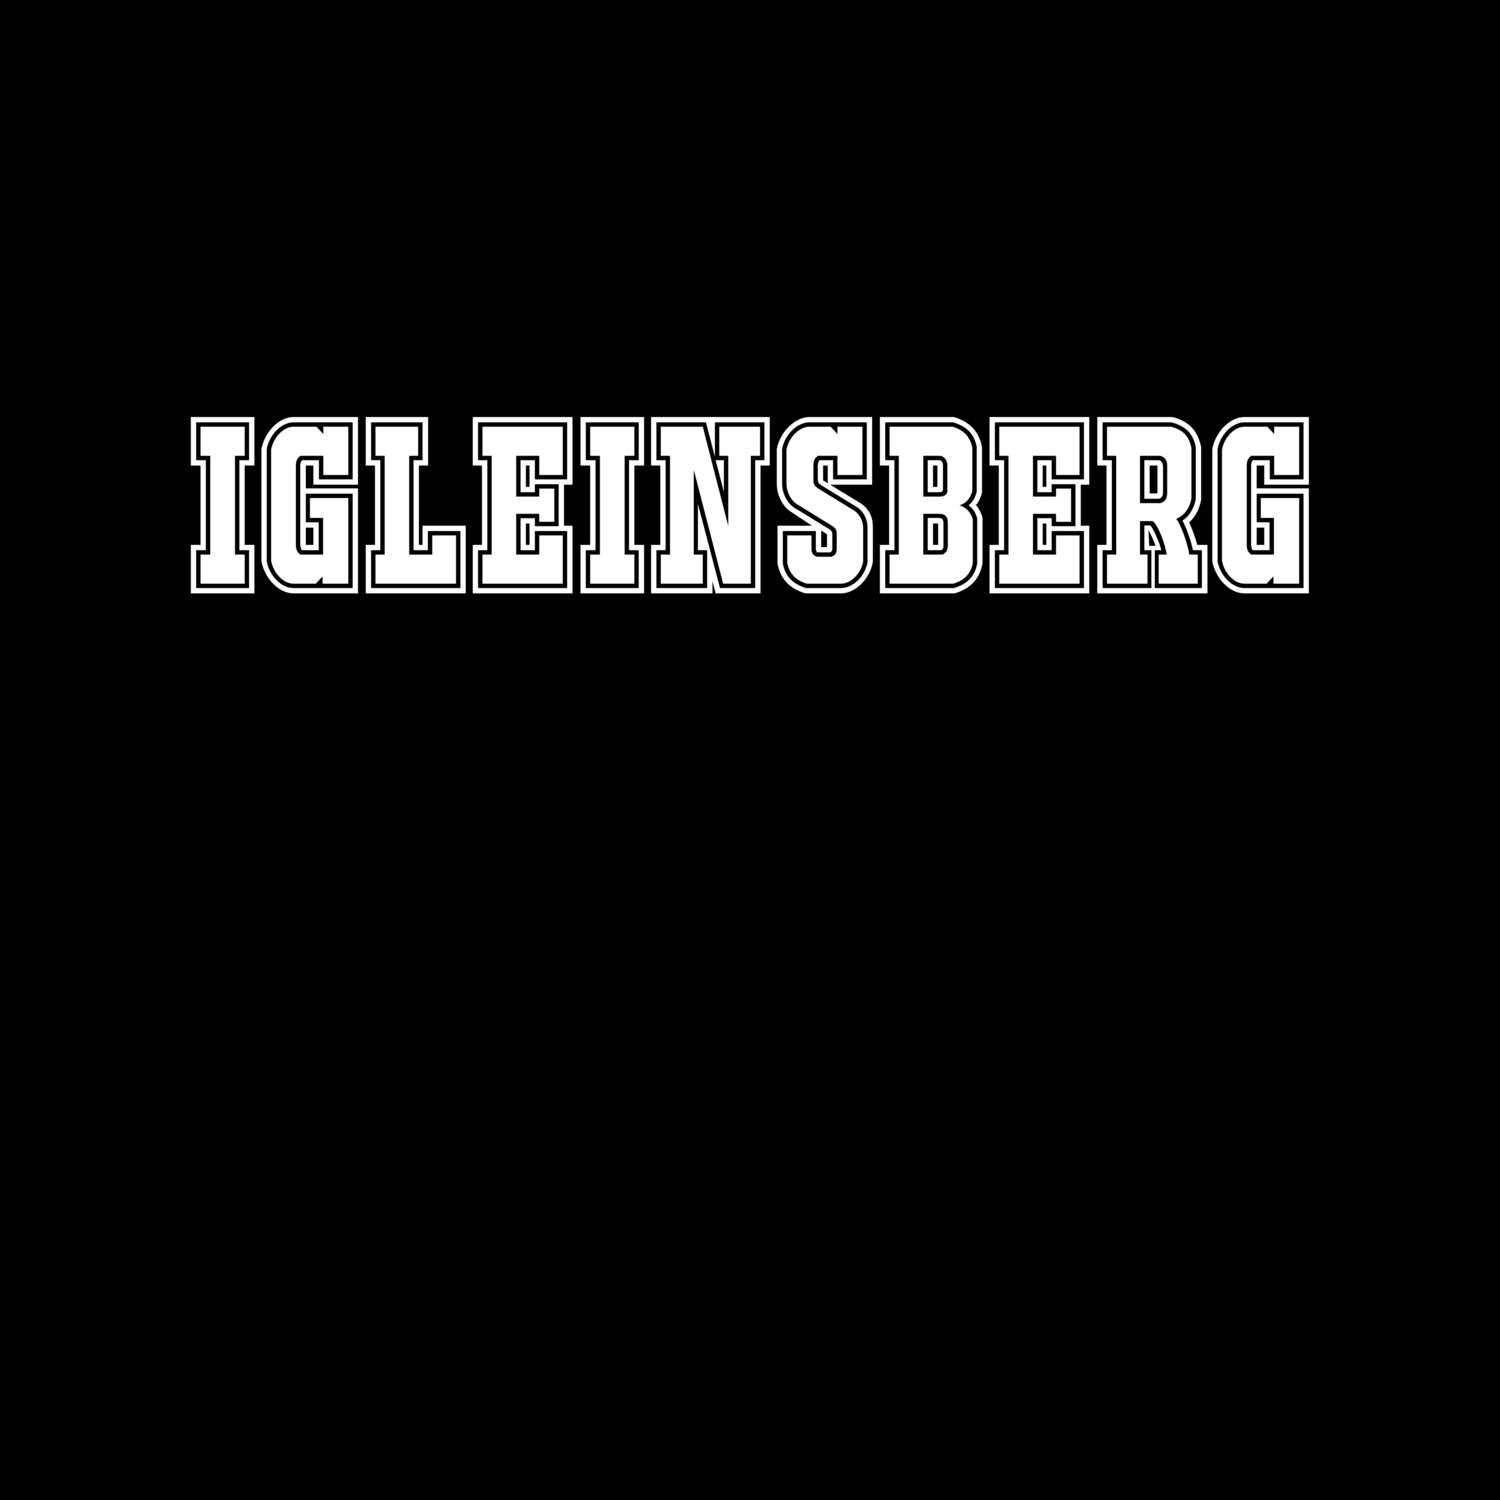 Igleinsberg T-Shirt »Classic«